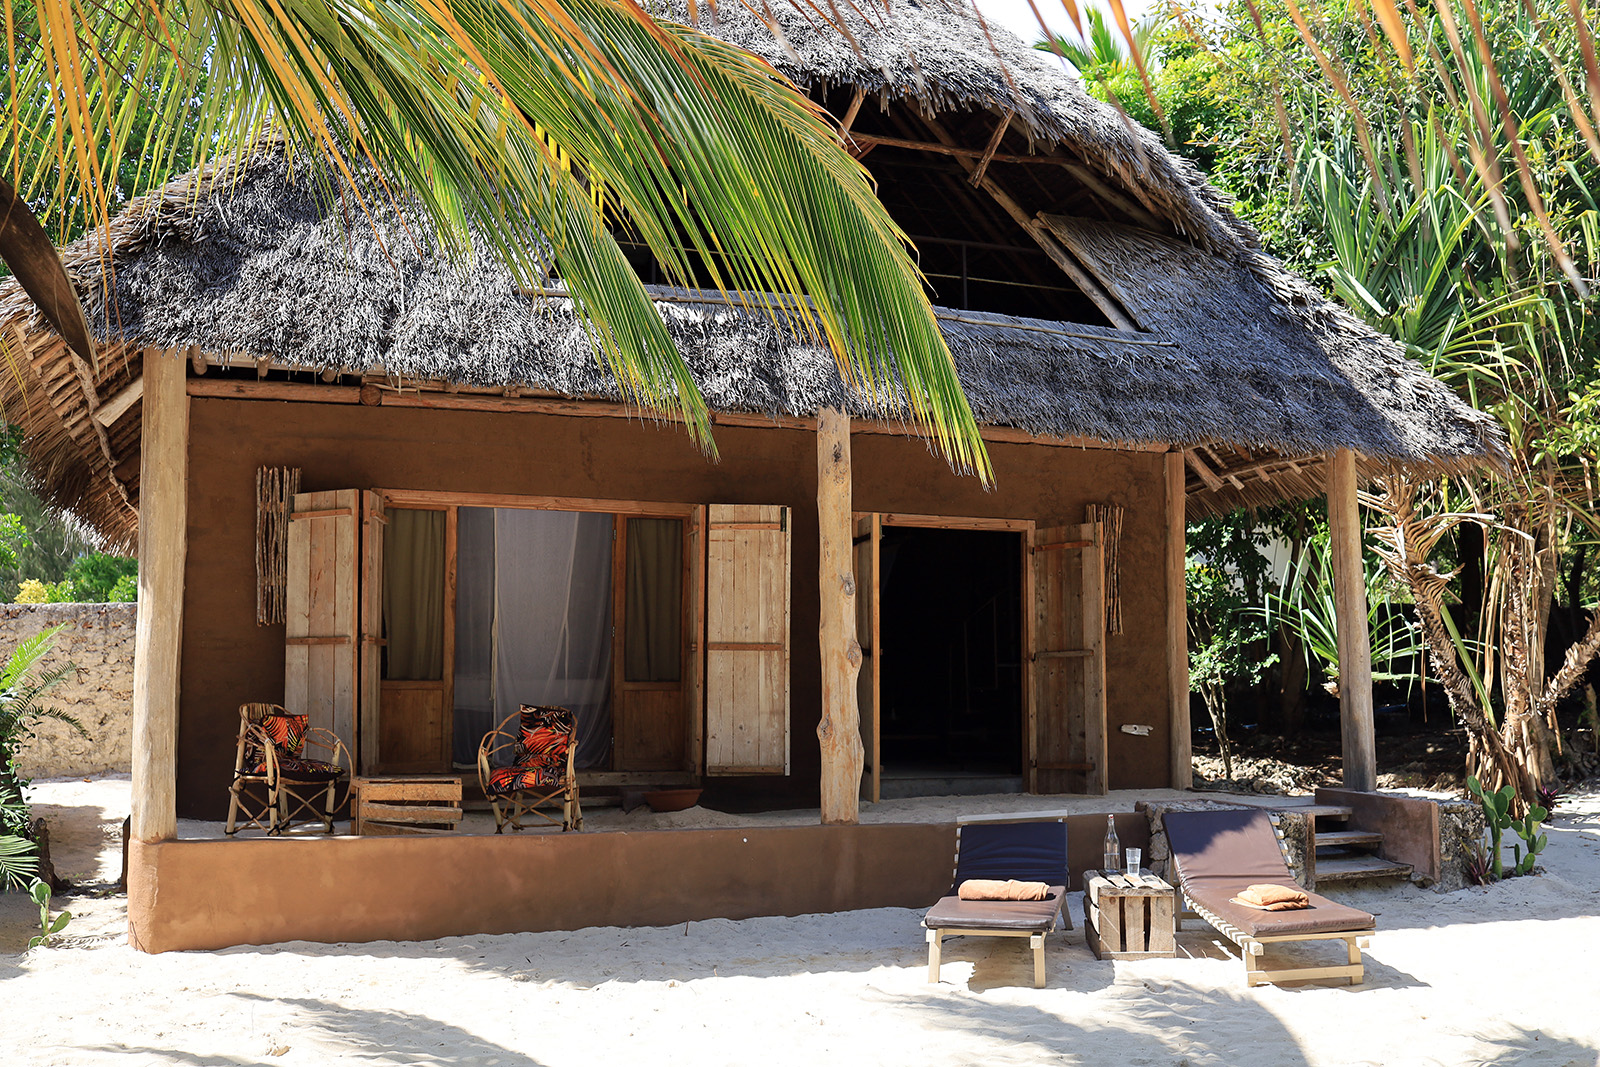 Sol och bad på Zanzibar, Mwezi boutique resort